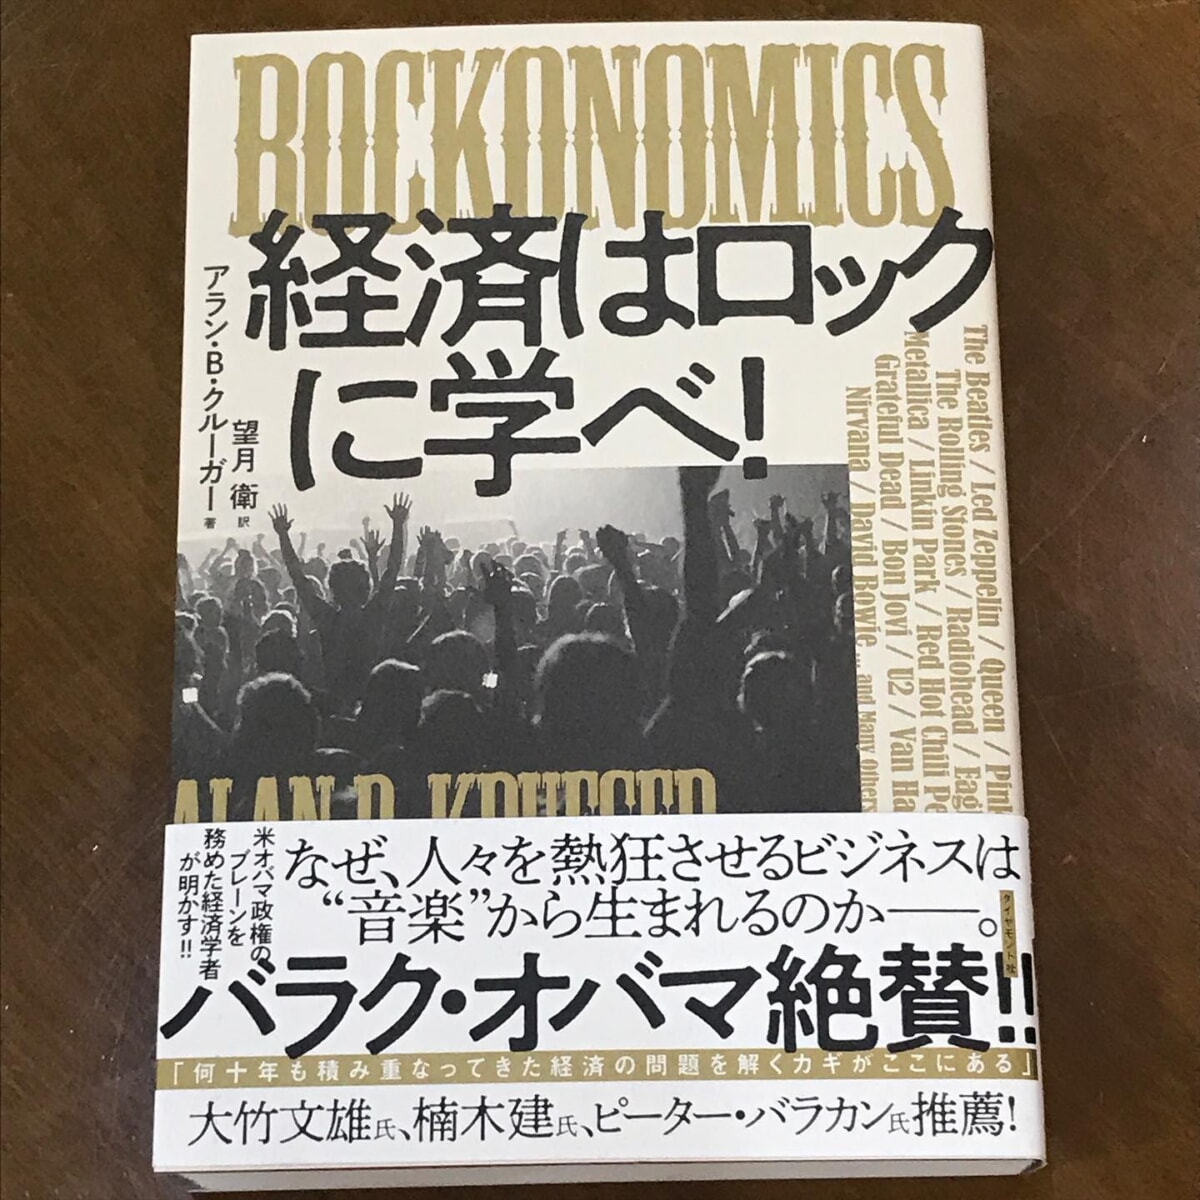 経済はロックに学べ！マイスタ文庫の注目の新刊！日本初の #コワーキングスペース #カフーツ の伊藤さんのオススメ本。が、やっと届きました♪まだ、中身を読んでませんちゃんと読みますよ何を隠そう、#マイスタ加古川 の運営者の私は、#元バンドマン なんです。#ベーシスト ですまぁ少ししかやってないので、大きな声では言ってないッスだから、知らない人も多いかも。#コワーキング 関係者には、元バンドマンや音楽関係者が多いと、コワーキング界隈の人たちと話すとあるあるの話なんです。ちゃんとした統計データはないけど、かなりの確率で音楽をやっていた、やっている人が多いのは本当の話。推測だけど、セッションをしたり、他のメンバーの呼吸に合わせて演奏するなど、#協働 や #個性を活かす #プレー （演奏）が、底辺にあるから、コワーキングの根底に生きているのかなっていう話にたいてい落ち着く。そして、 #リズム隊 と呼ばれる、#ドラム 🥁や #ベース などリズムを刻む楽器の人が多い。きっと、深層の部分で何か共通項というか、#コミュニティマネージャー の必要要素があるのかもネ。さて、この本だが、最近、接点の多い伊藤さんのオススメで、とにかく読み応えがあると聞いたので購入した。#ロック と #経済学 に相関関係、いや、ロックに経済学のお手本が隠されているのでは？と、ちょっと興奮しているマイスタ加古川では、私の蔵書を #私設図書館 「マイスタ文庫」として、自由に読んでいただけるように、施設内の本棚に置いています。ご利用者が他の方に読んでもらいたいと、置き本もあります。貯めたポイントでも、話題の本を購入しているので、ちょこちょこ増えていますよ。新書、AI、プログラム言語、ネット、wordpressビジネス書、自己啓発本、デザイン、告知絵本、子育て、教育DIY、趣味など、広い分野の本があります。知り合いのツテで、本の共同購入で少しだけ割引がありますので、ご注文を一緒に❣️というのもありですヨ。#マイスタ加古川 #兵庫県 #加古川市 #加古川 #寺家町 #クリエイトスペース #モノづくりスペース #モノづくり#コト起こし #イメージが形に#化学反応が生まれる場所 #大人の部活動#レンタルスペース #ワークショップ #ほぼ日刊マイスタ通信 - Instagram投稿